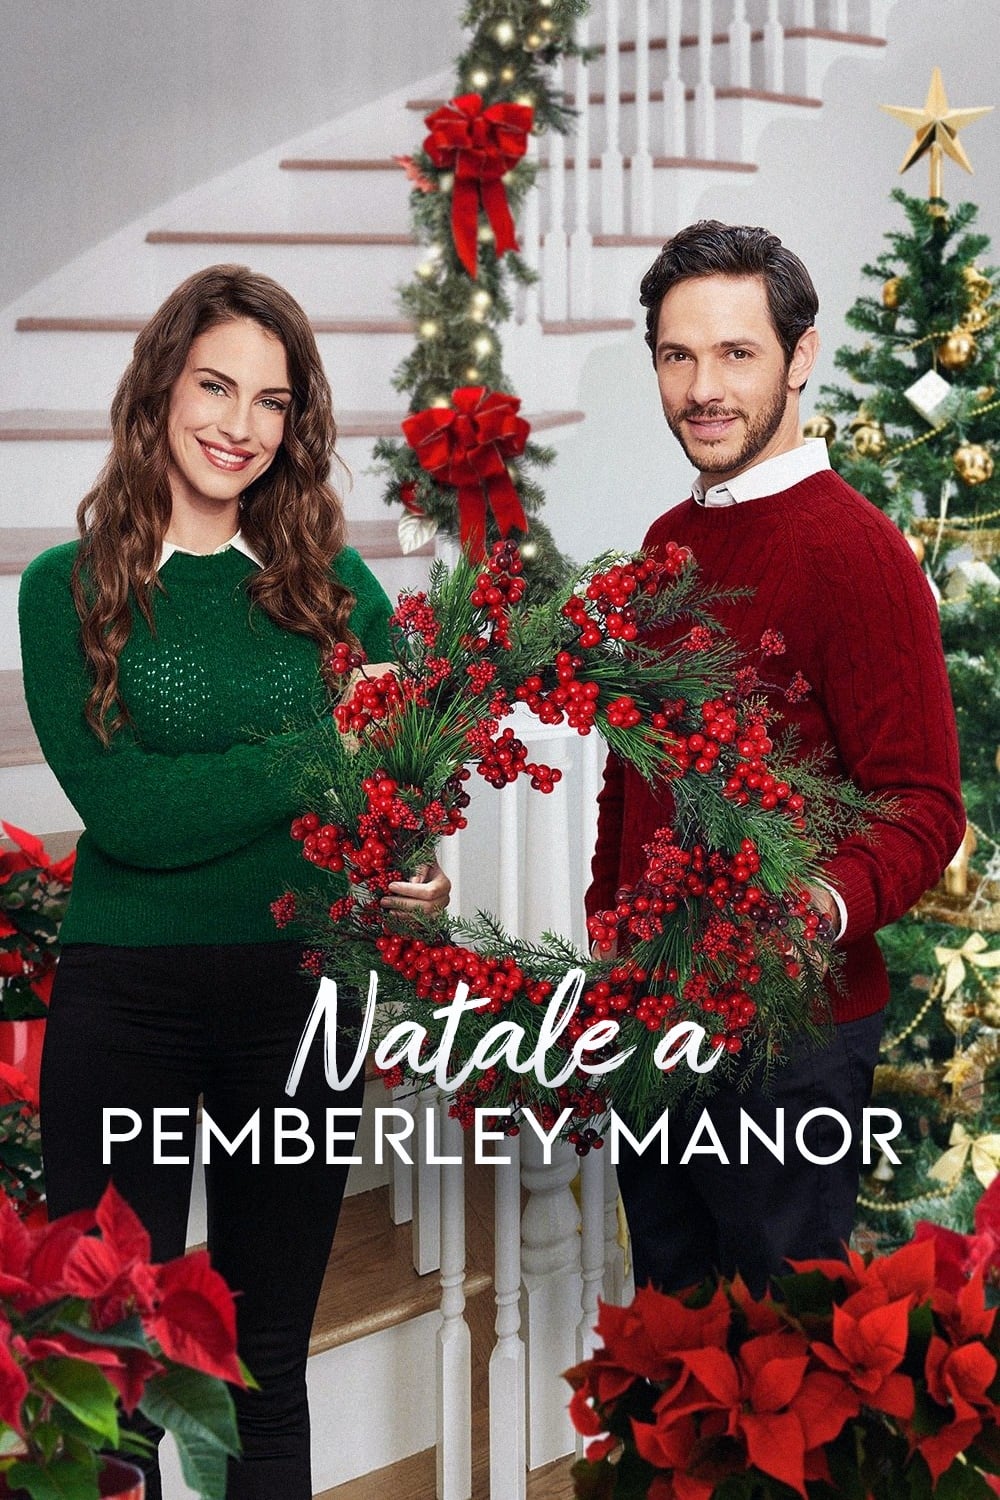 Christmas at Pemberley Manor